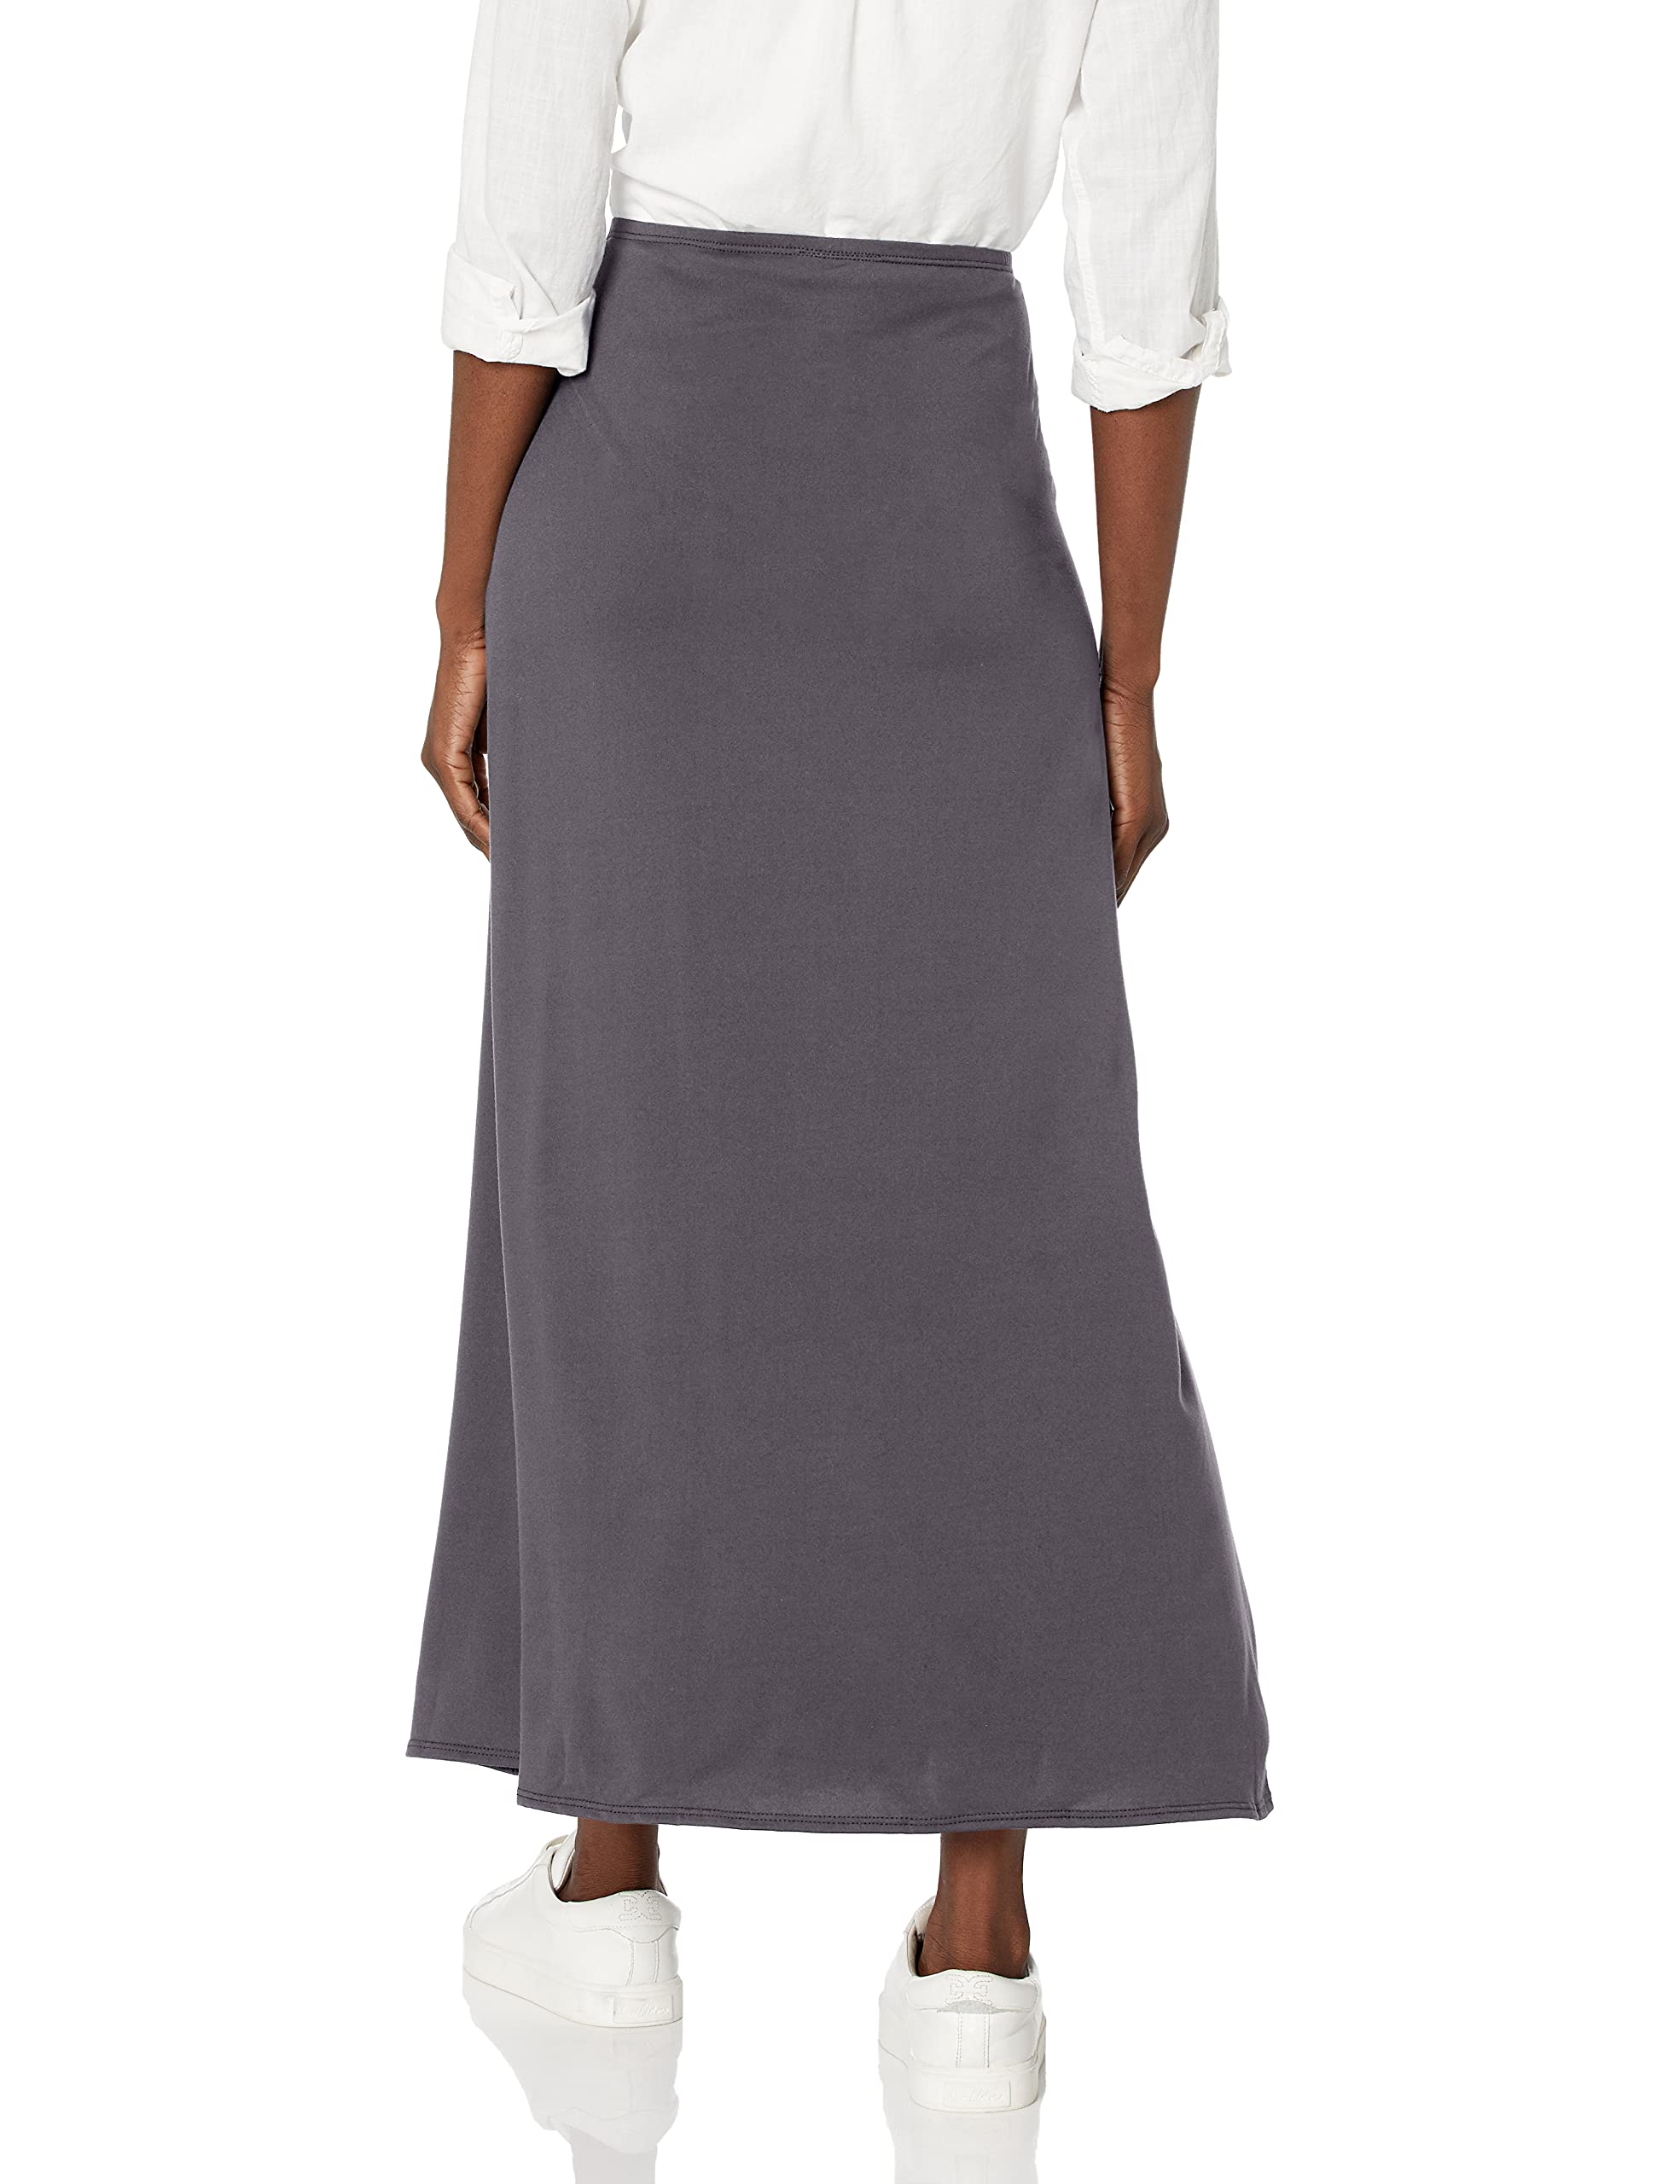 Star Vixen Women's Petite Modest Soft Knit Pull-on Midi-Length Skirt